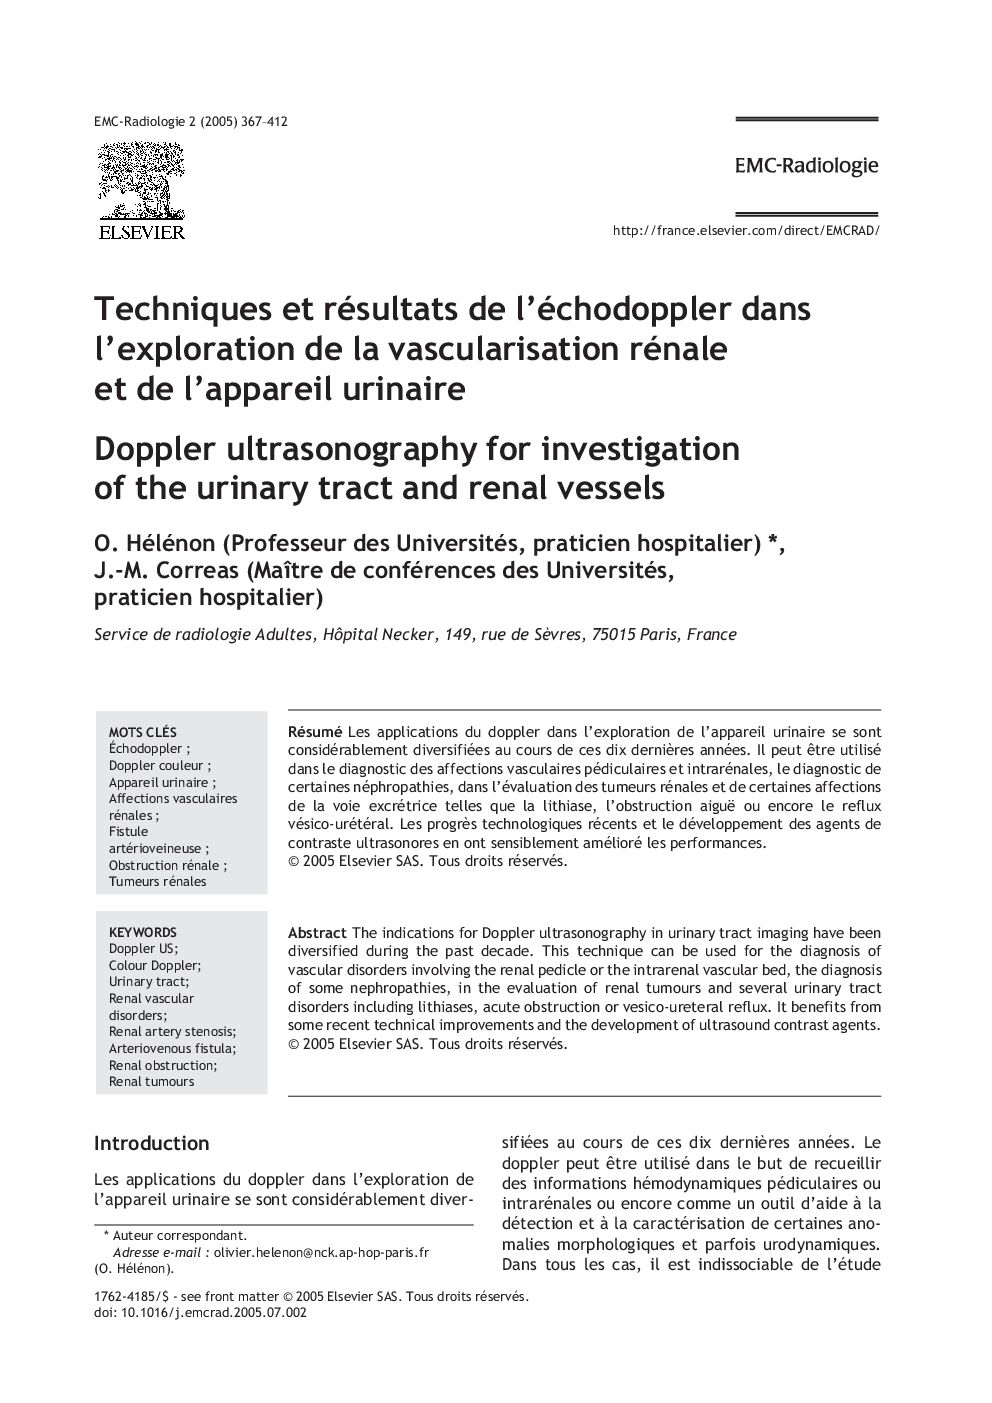 Techniques et résultats de l'échodoppler dans l'exploration de la vascularisation rénale et de l'appareil urinaire